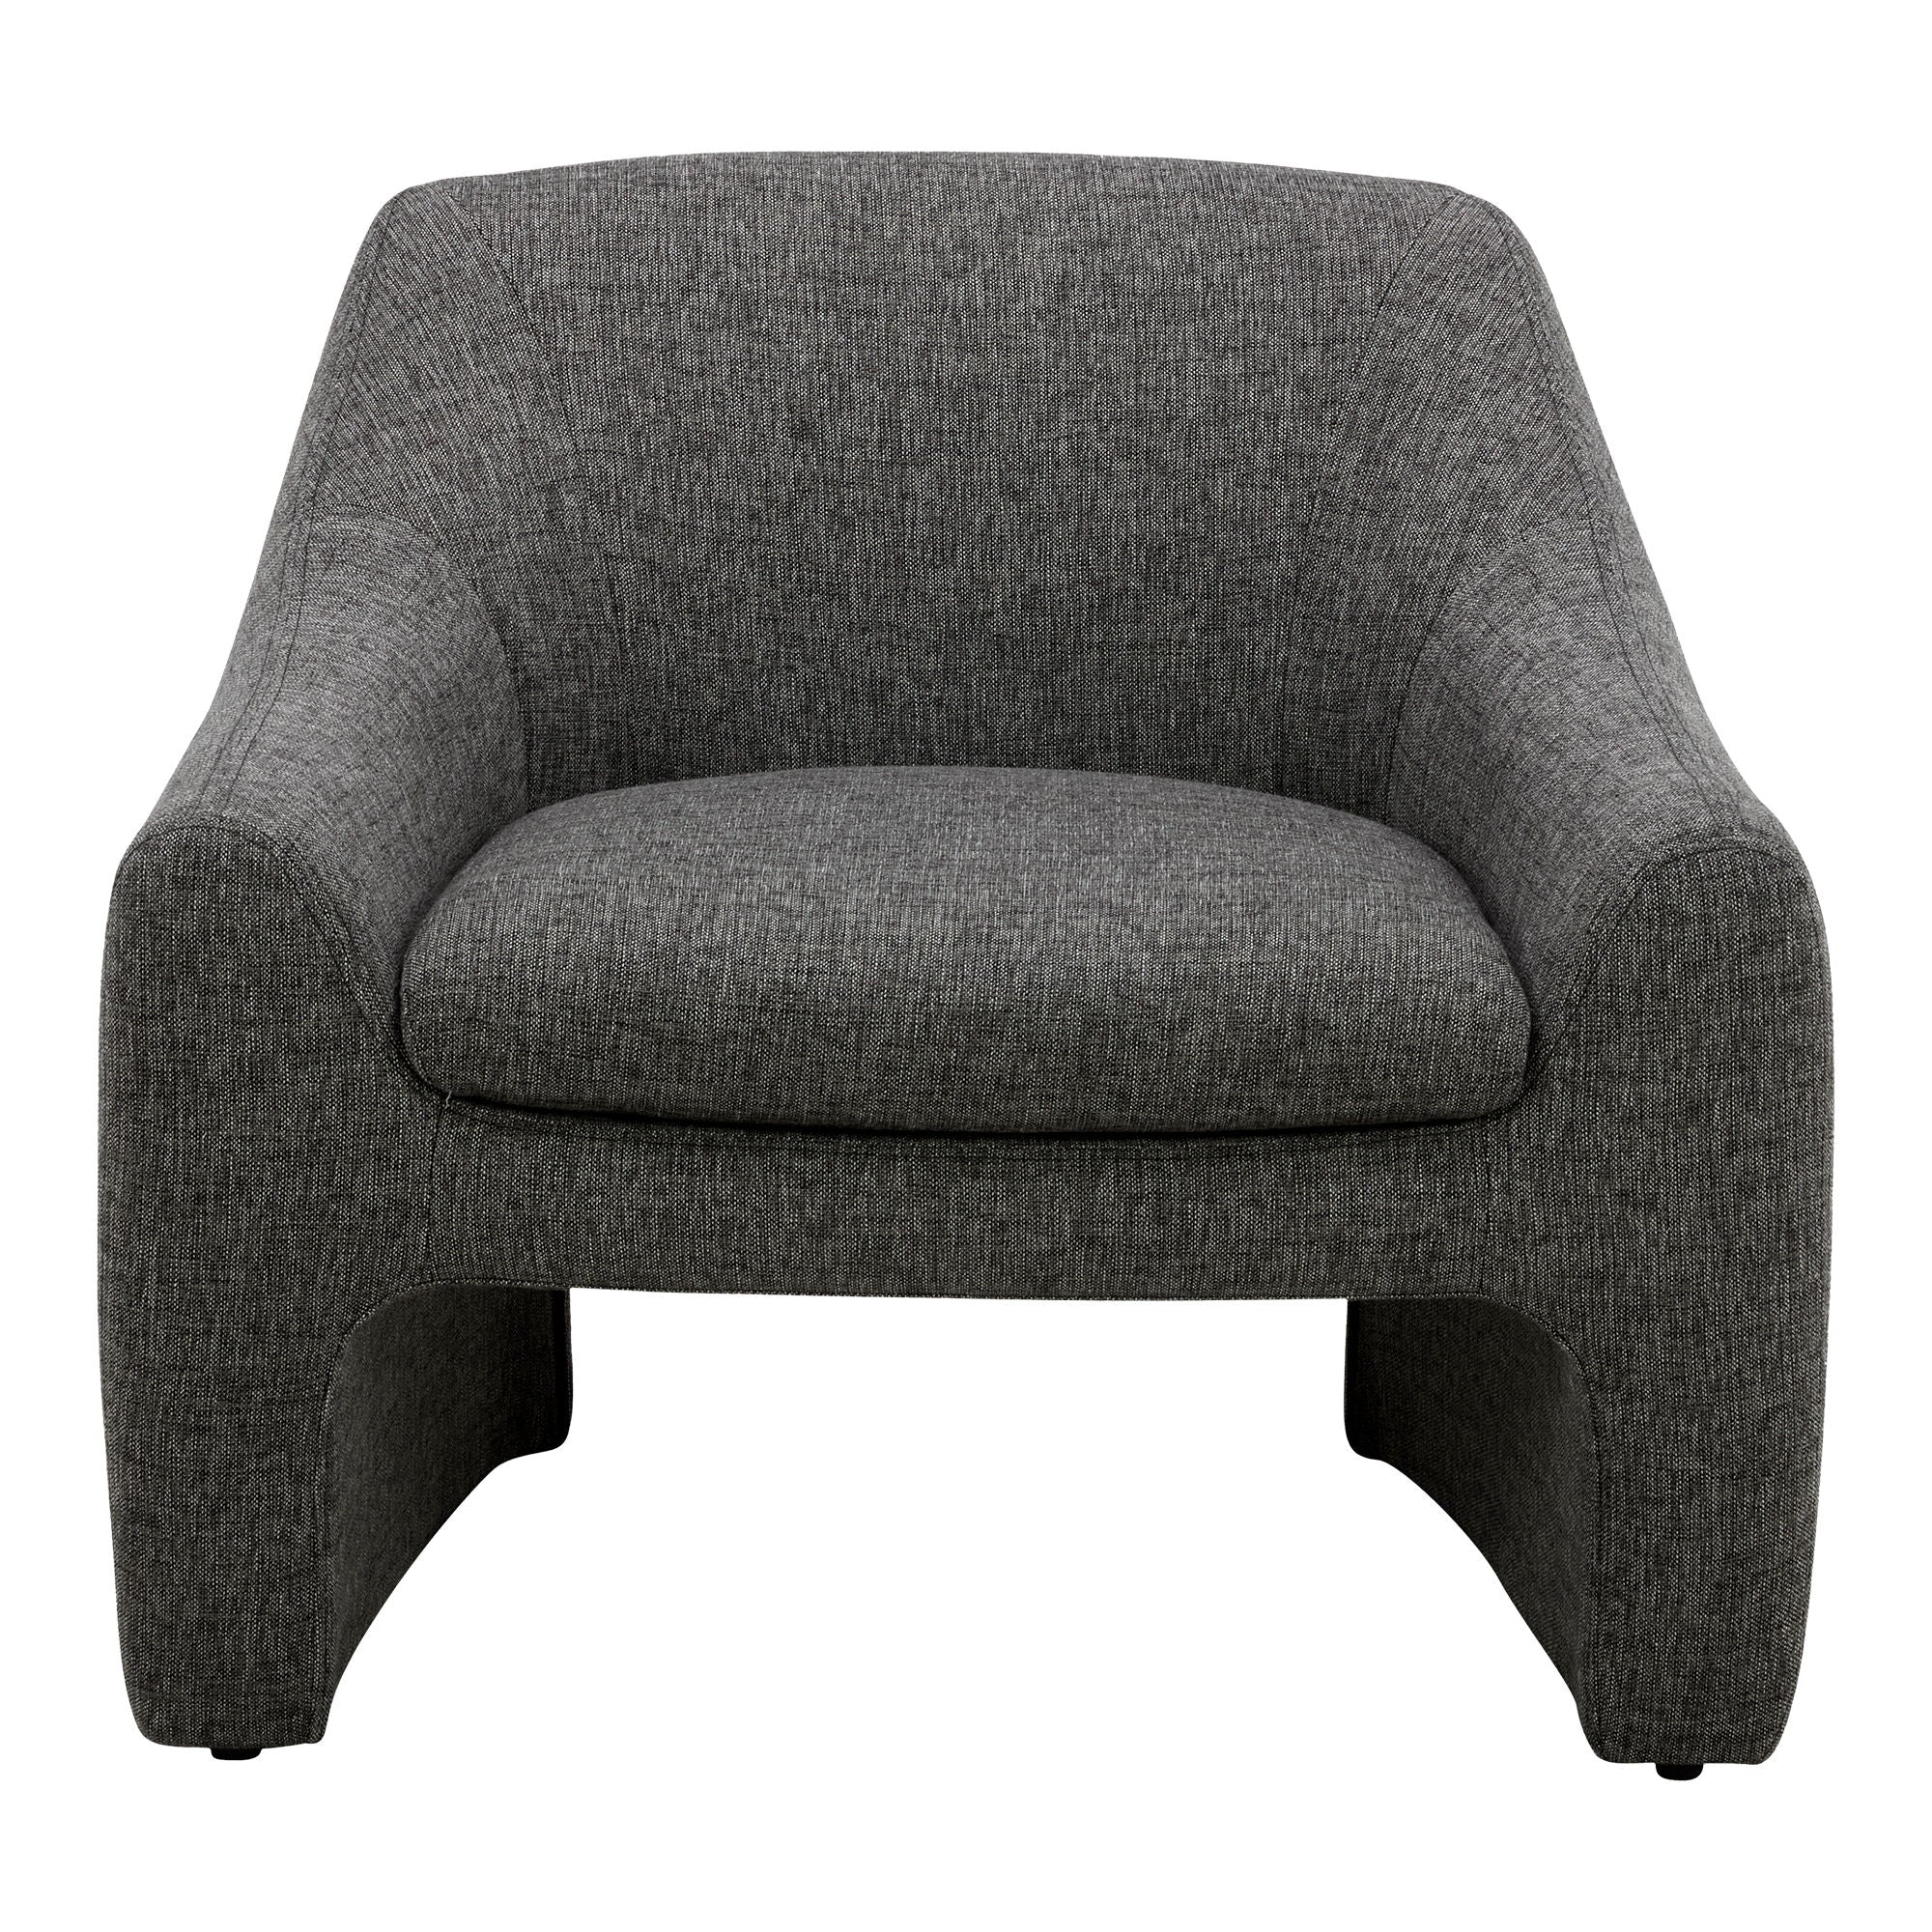 Kenzie - Accent Chair - Dark Gray